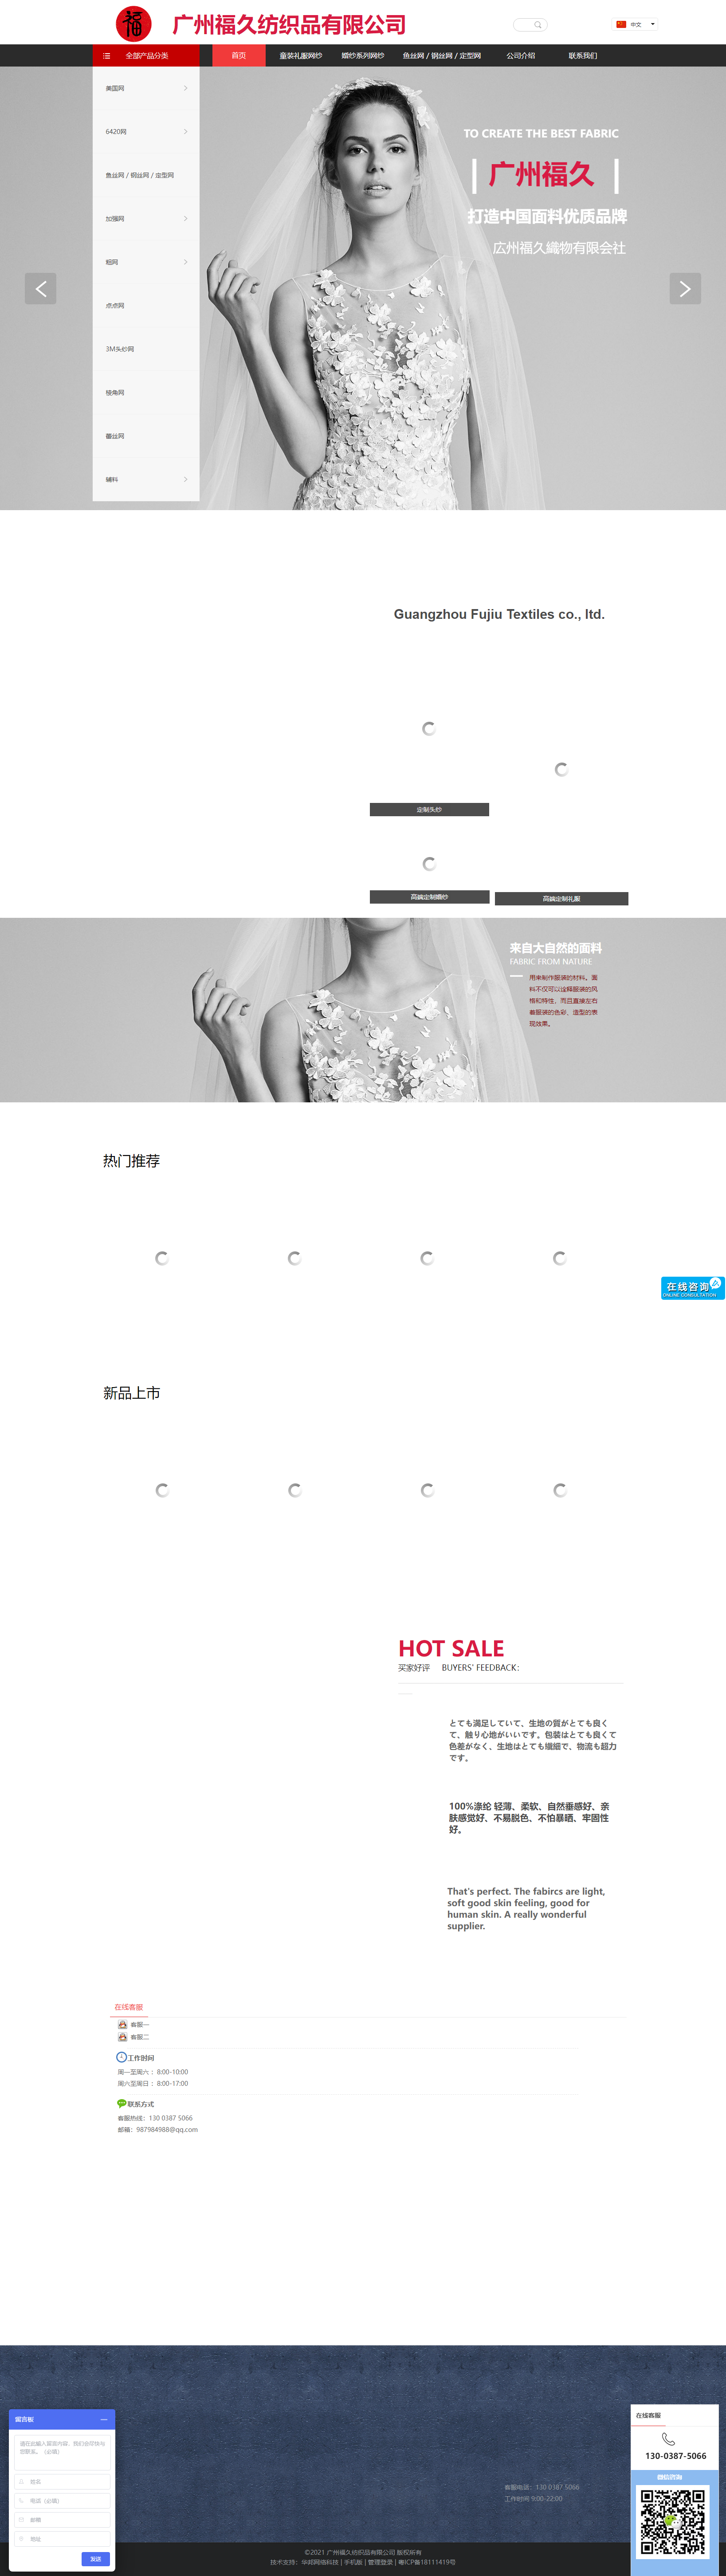 广州福久纺织品有限公司网站案例